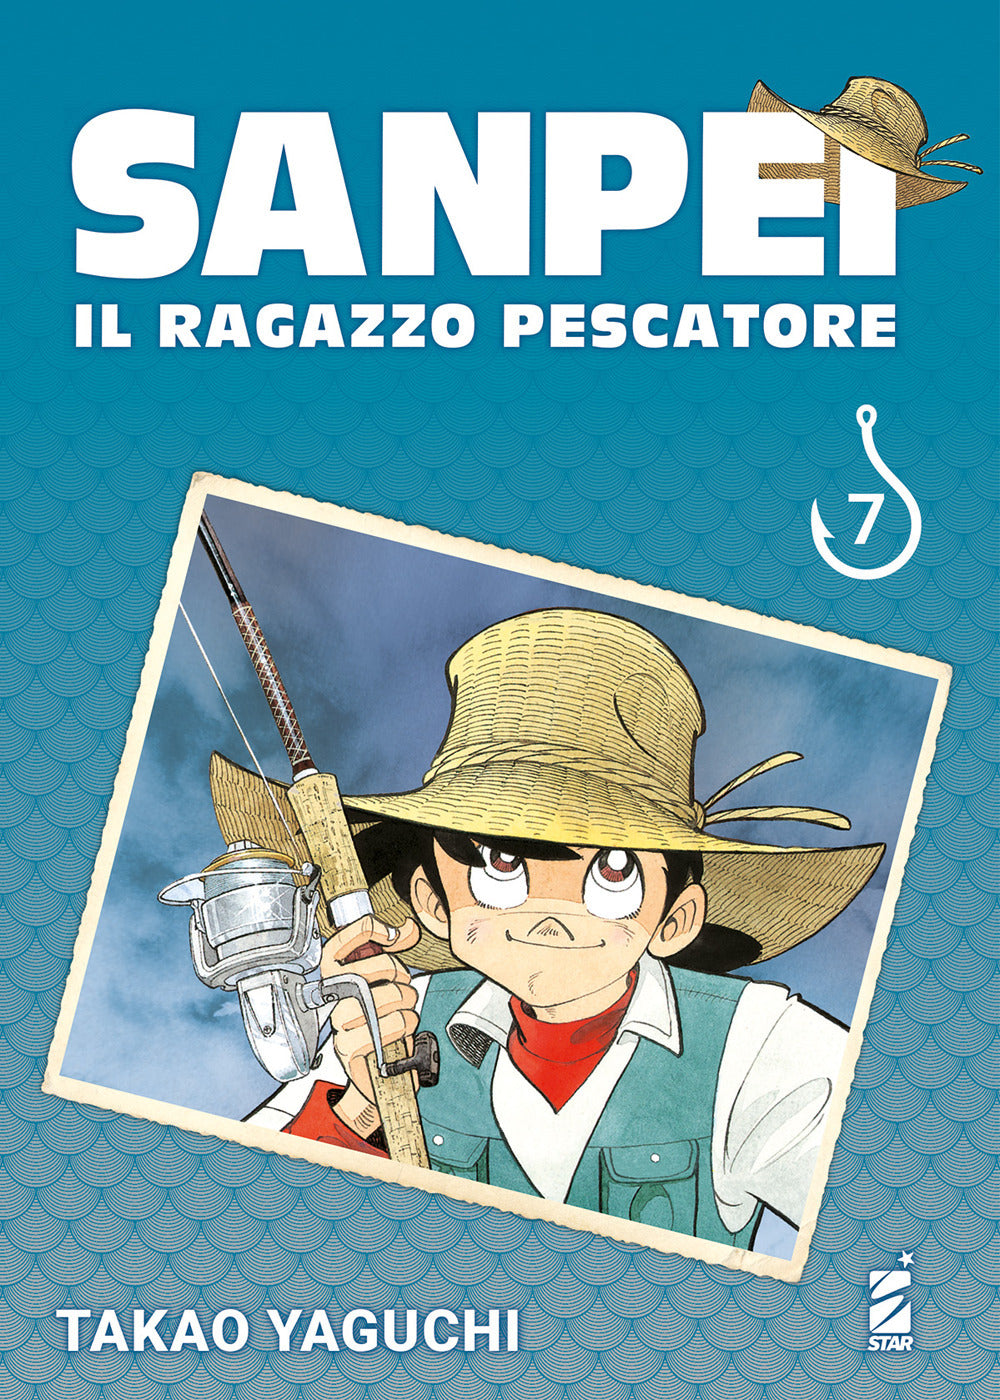 Sanpei. Il ragazzo pescatore. Tribute edition. Vol. 7